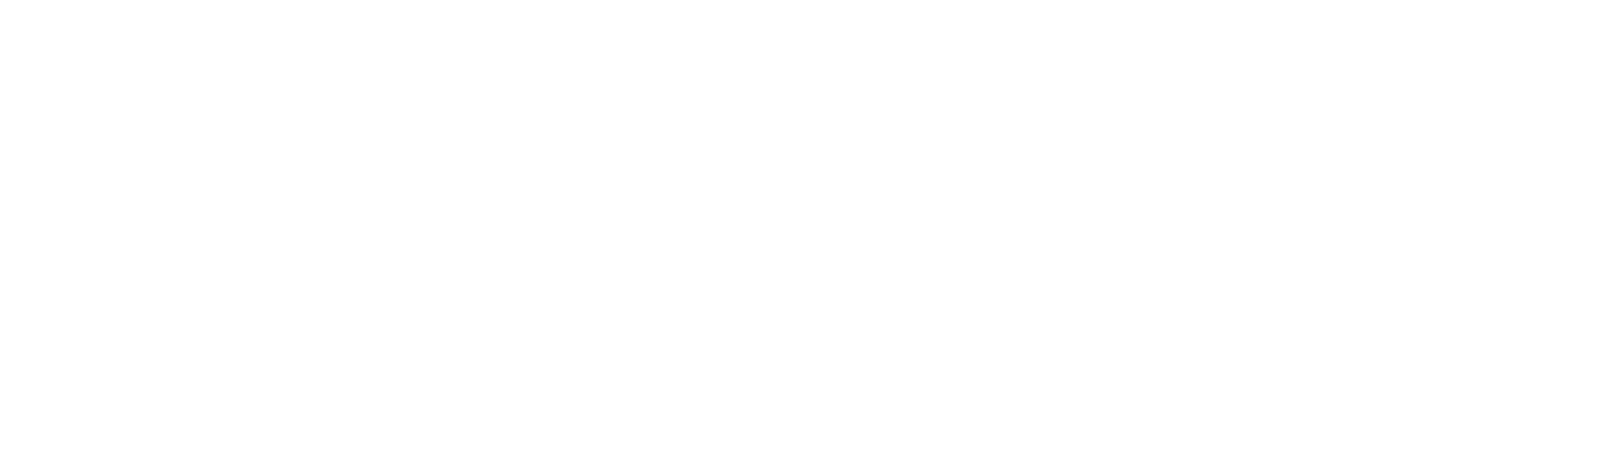 Salem Media Group
 logo large for dark backgrounds (transparent PNG)